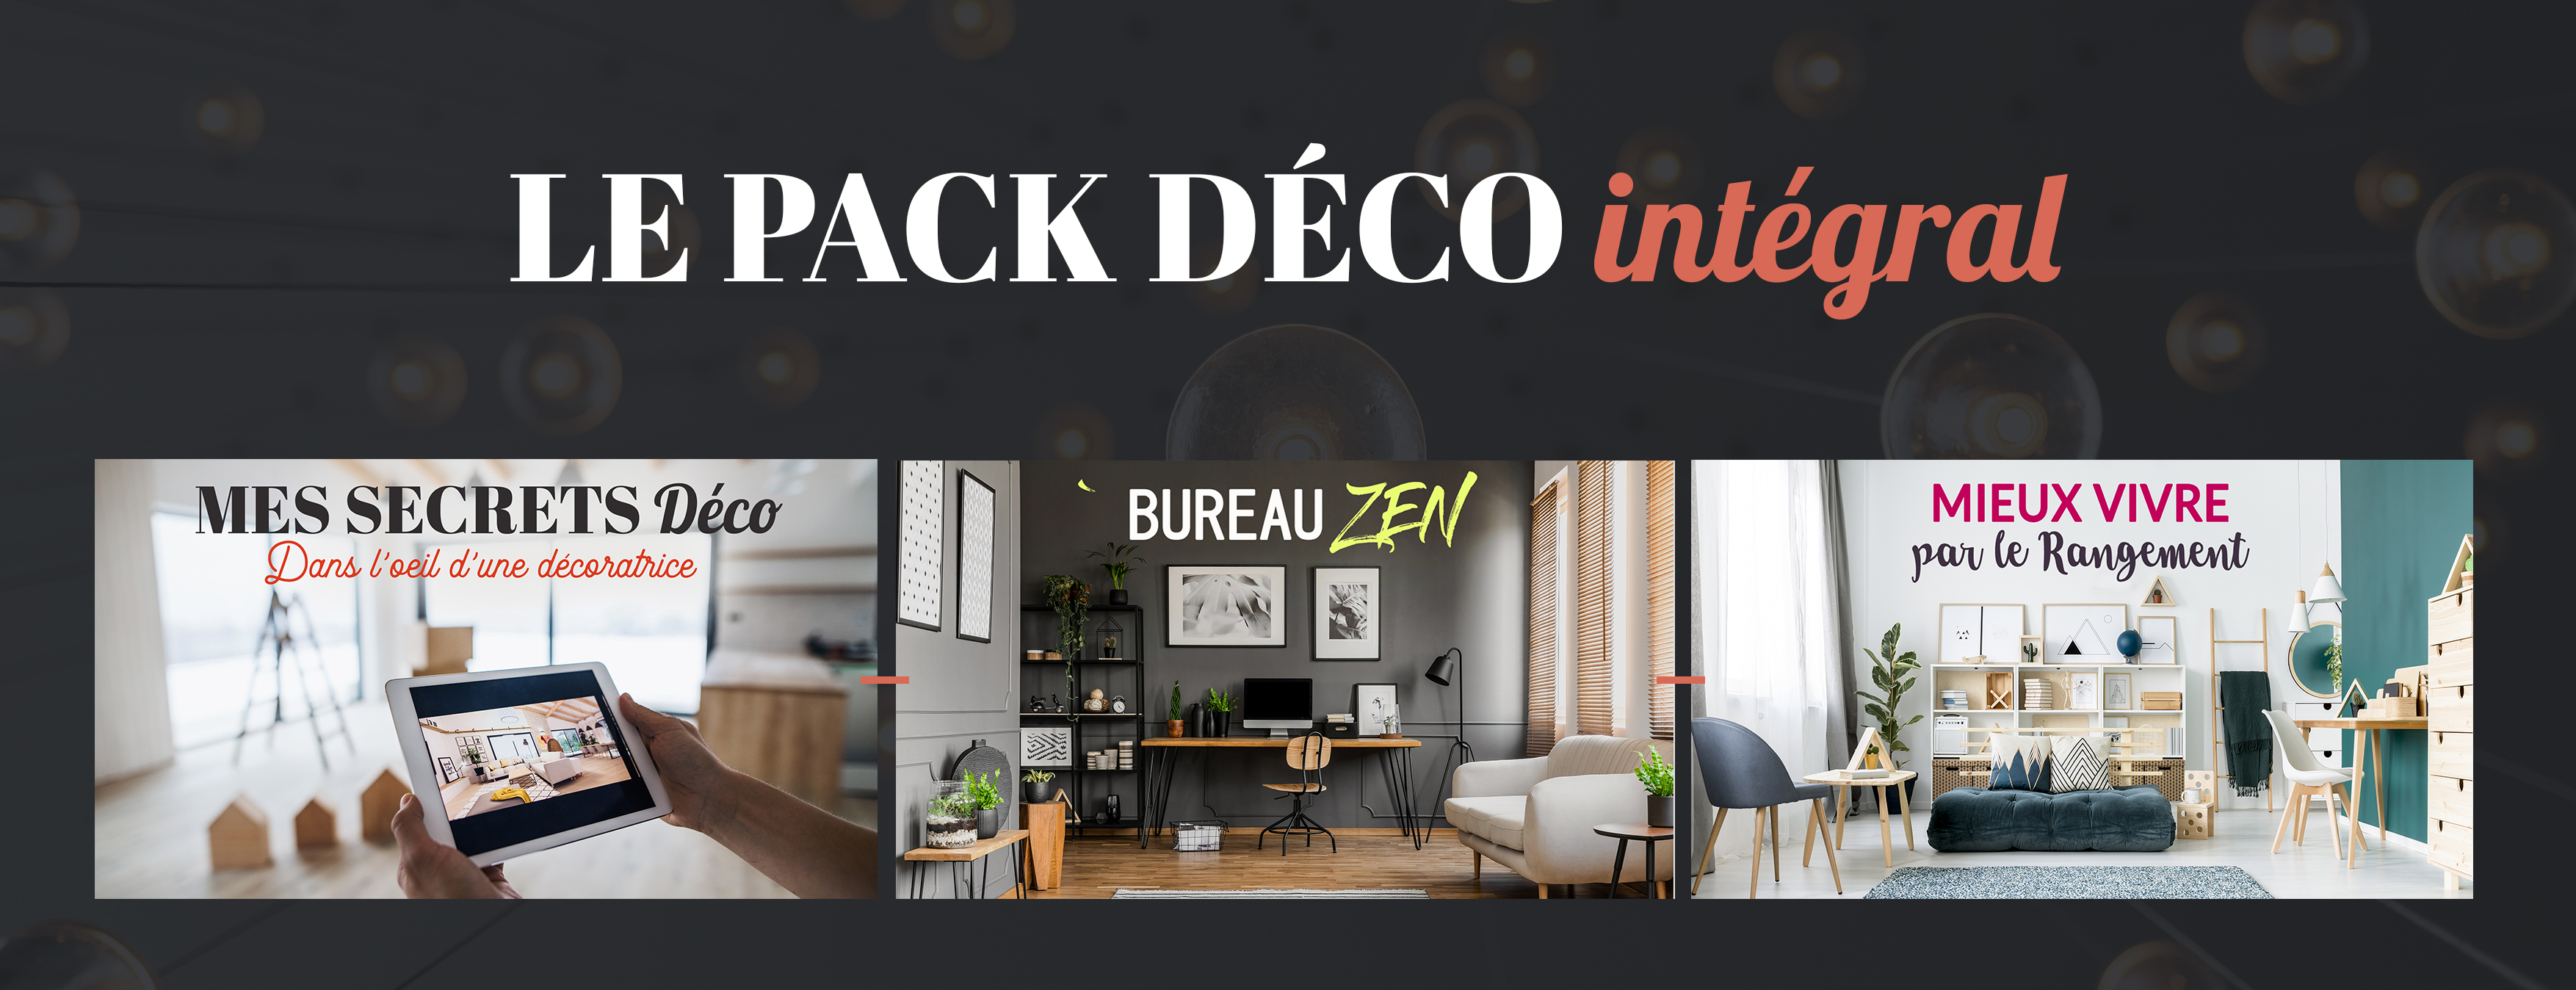 Formation en ligne à distance escale design et deco décoration maison décoratrice pack déco intégral